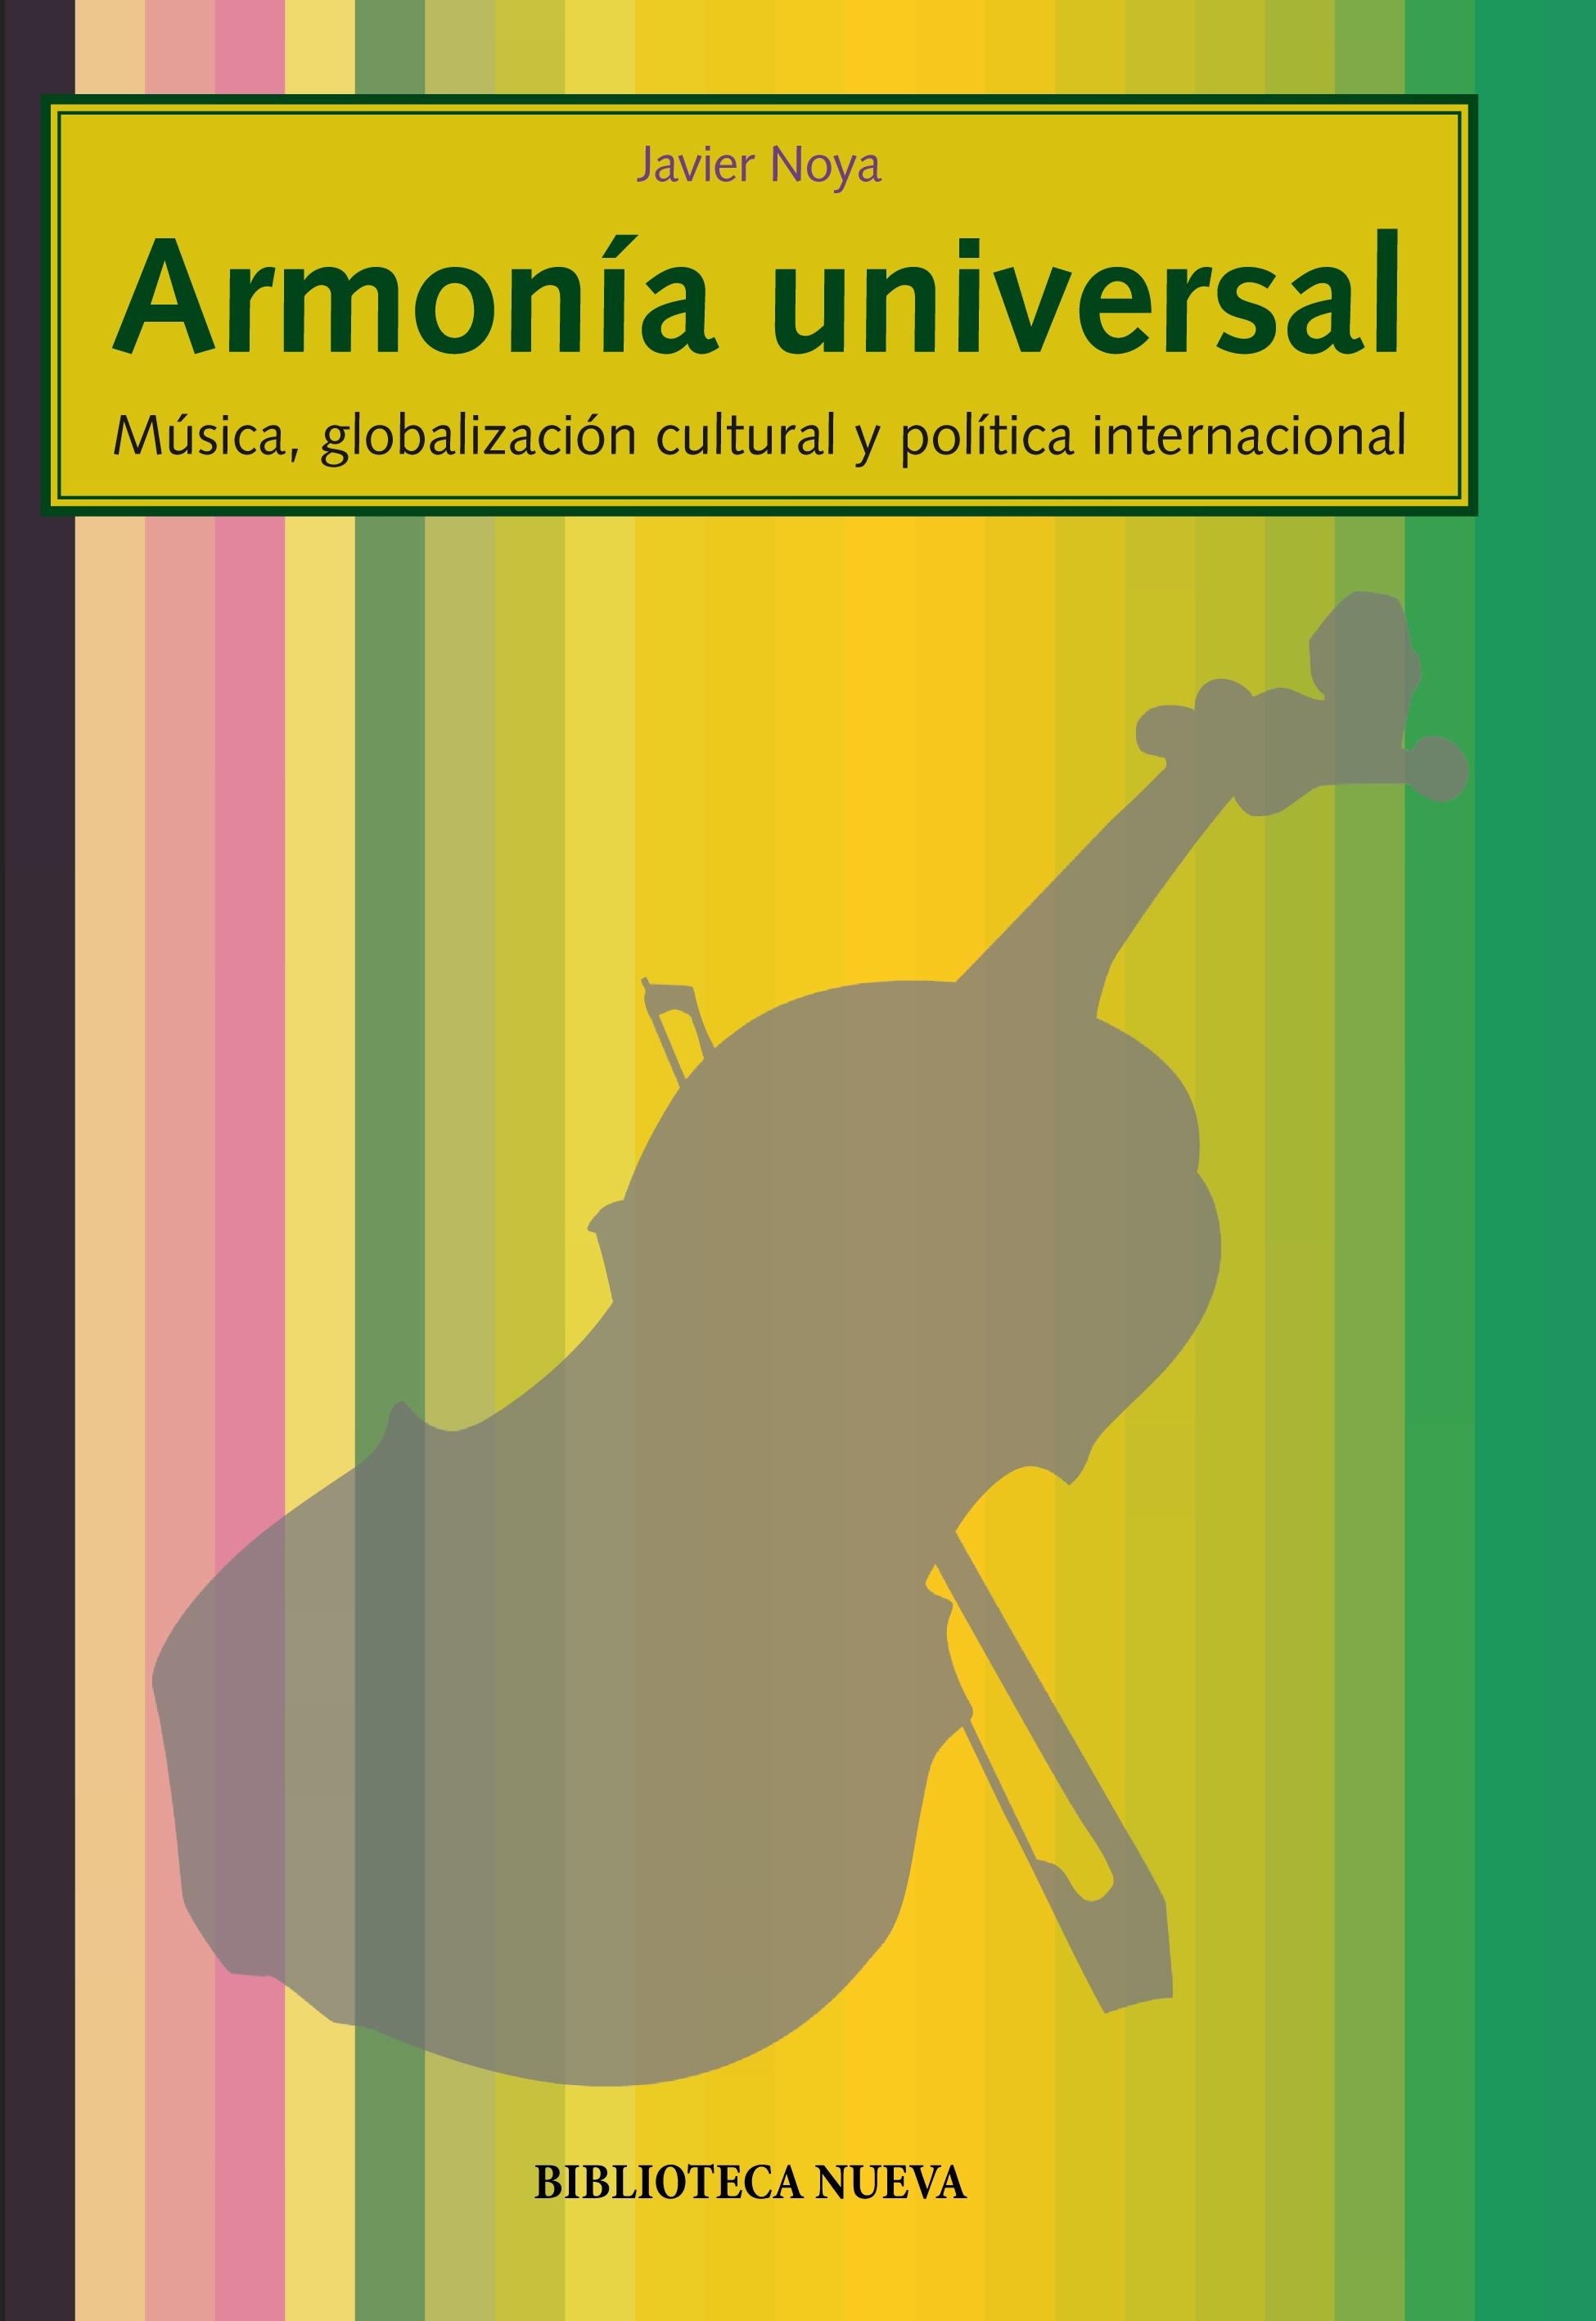 ARMONÍA UNIVERSAL "MÚSICA, GLOBALIZACIÓN CULTURAL Y POLÍTICA INTERNACIONAL"